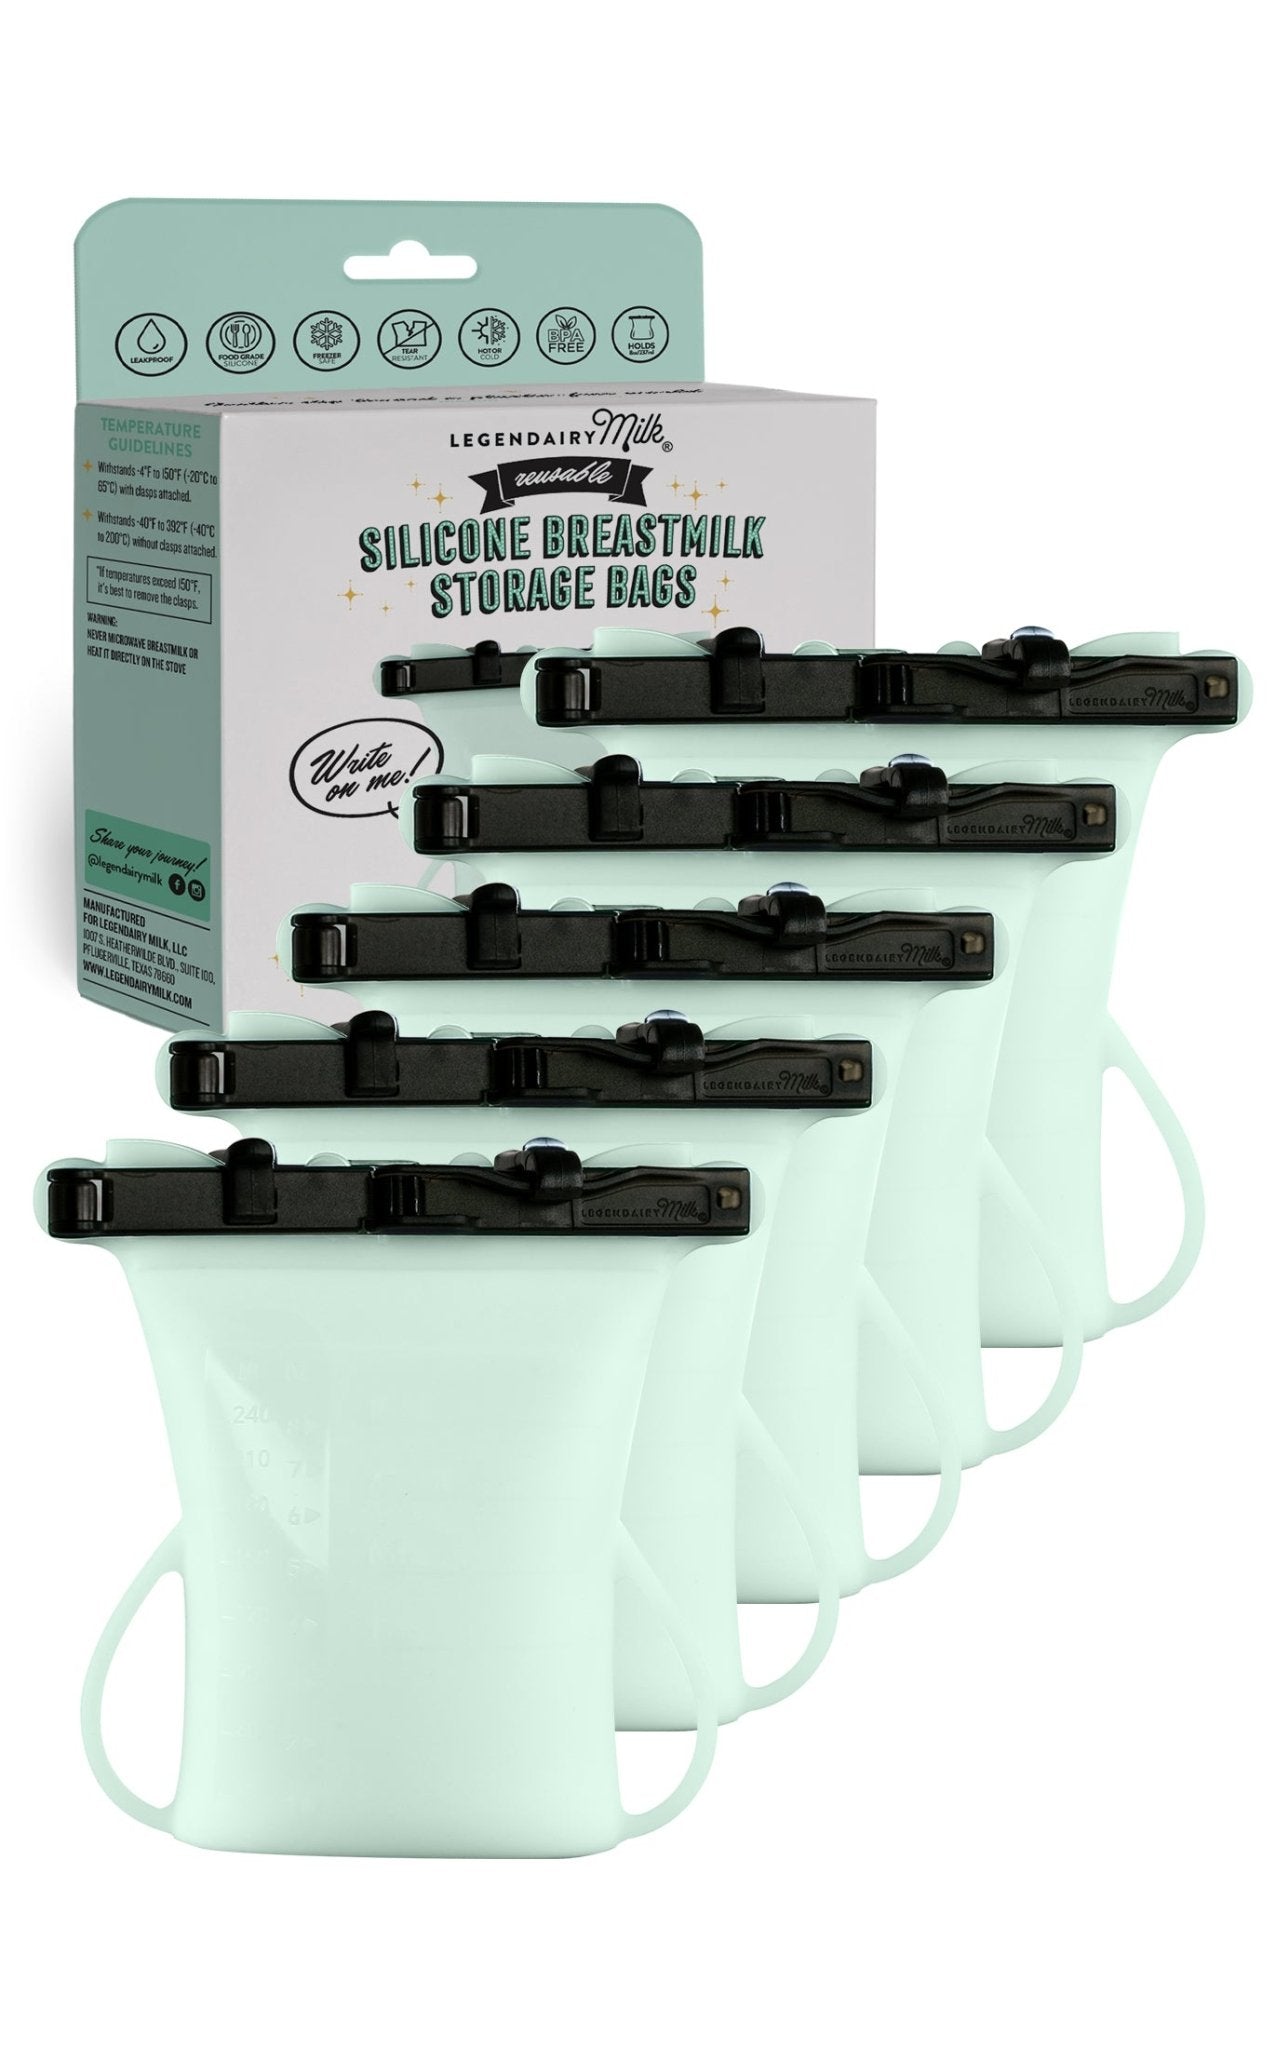 Silicone Breastmilk Storage Bags - Legendairy Milk